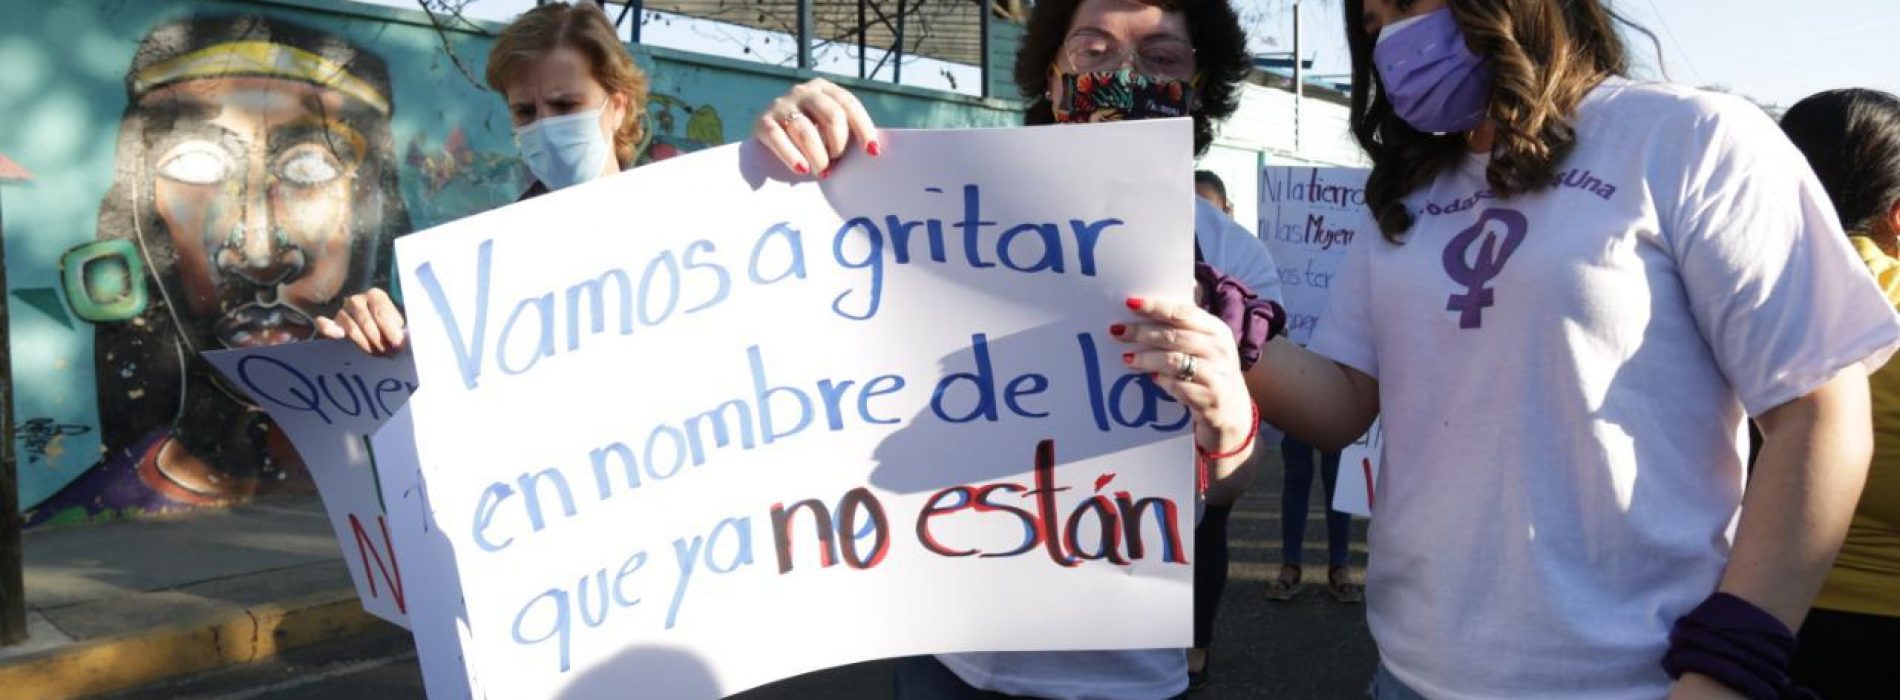 Encabeza Aurora López Acevedo marcha caravana para exigir no más violencia de género, justicia e igualdad para las mujeres.